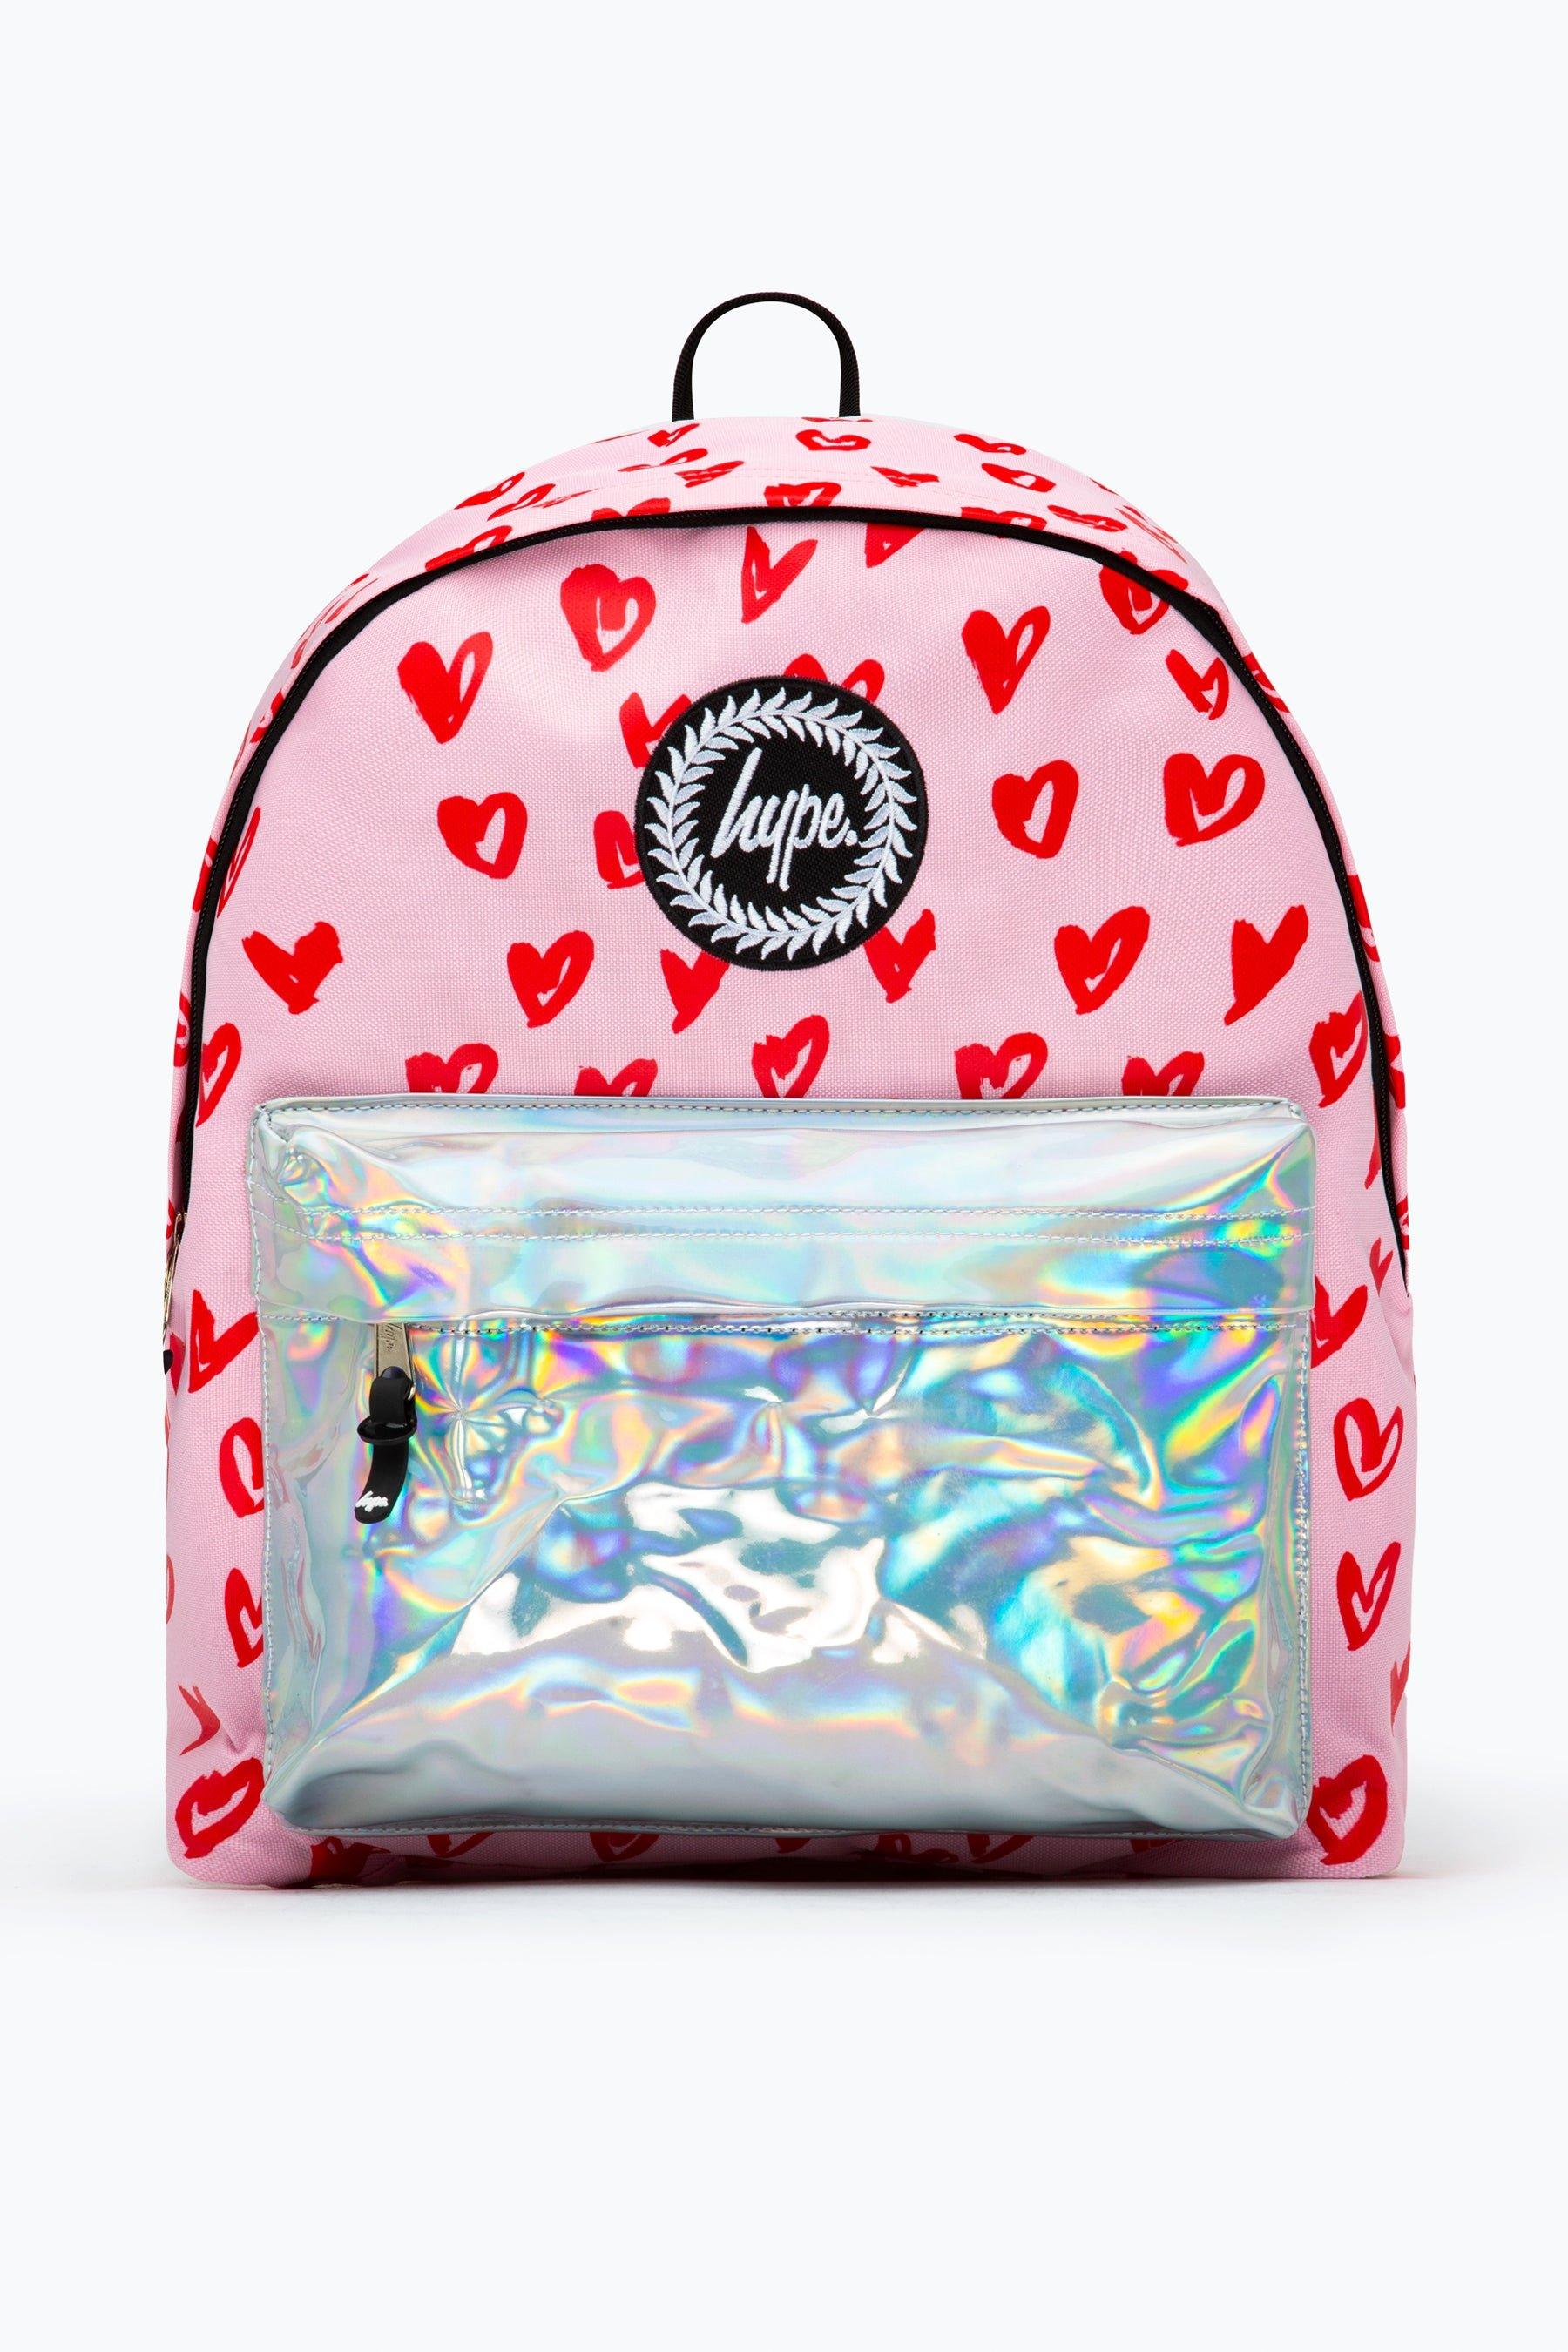 Hype Hearts Backpack | Debenhams